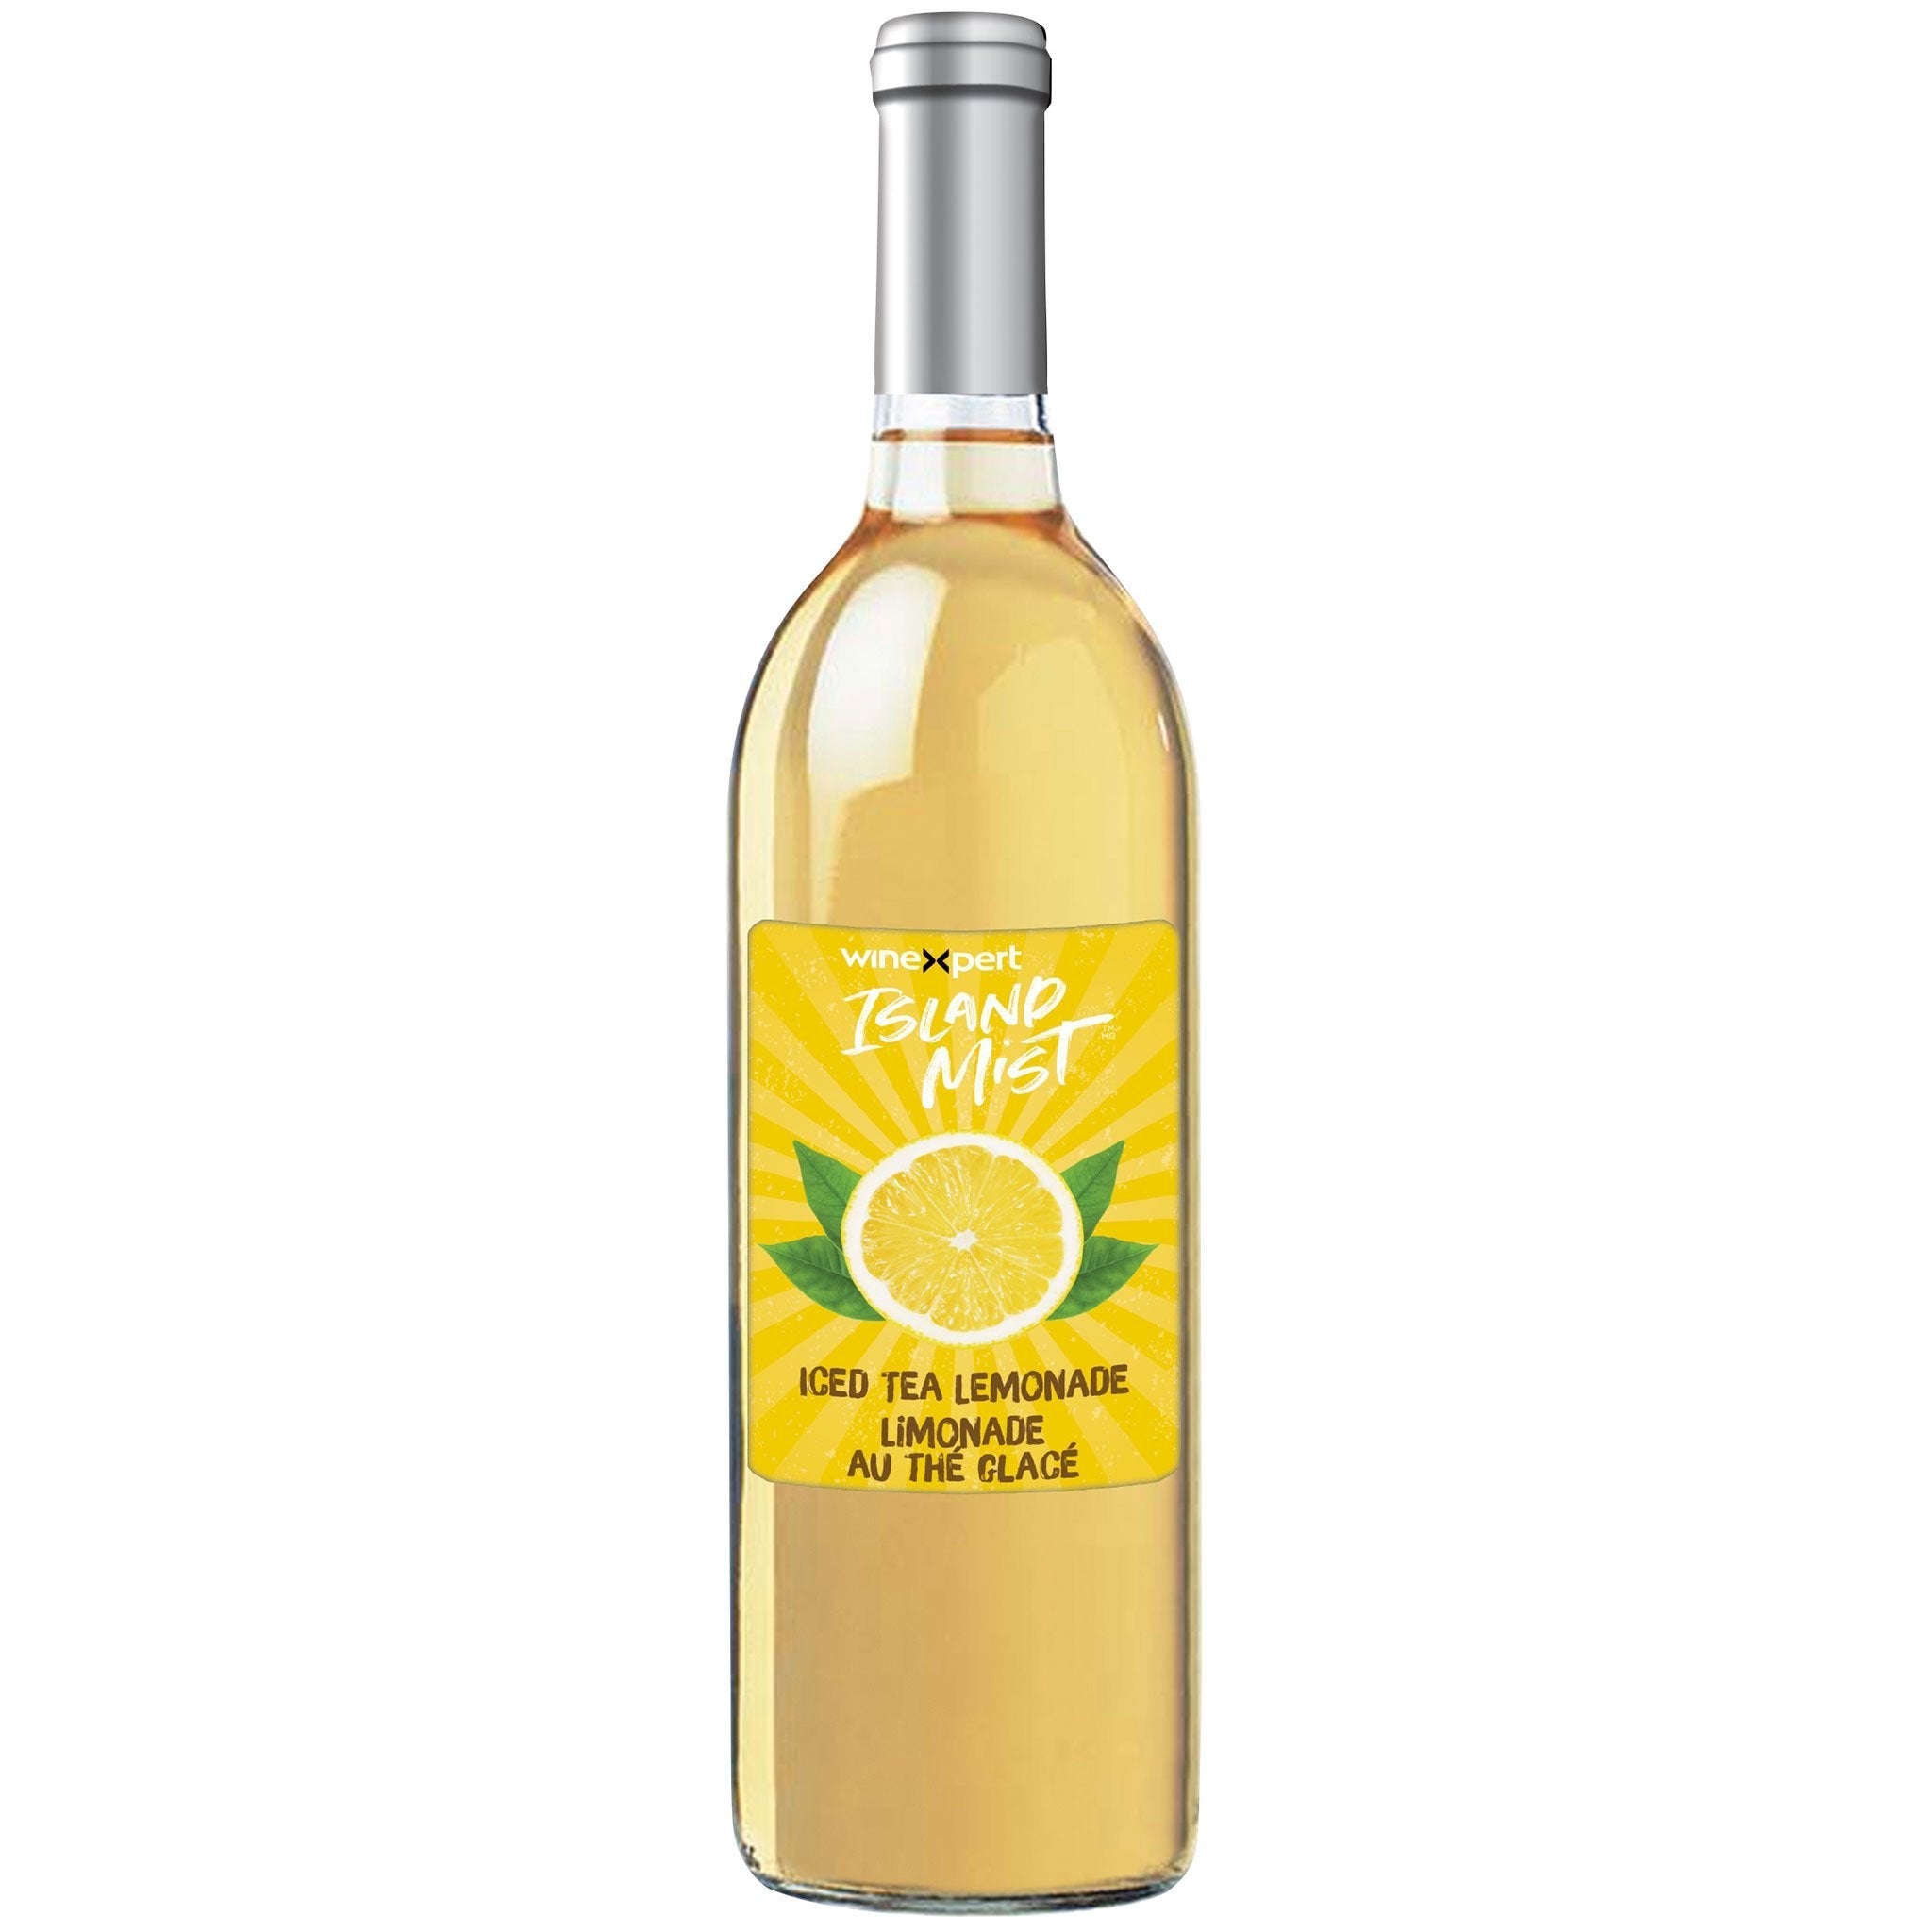 Iced Tea Lemonade Wine Cooler Kit - Winexpert Island Mist Limited Release